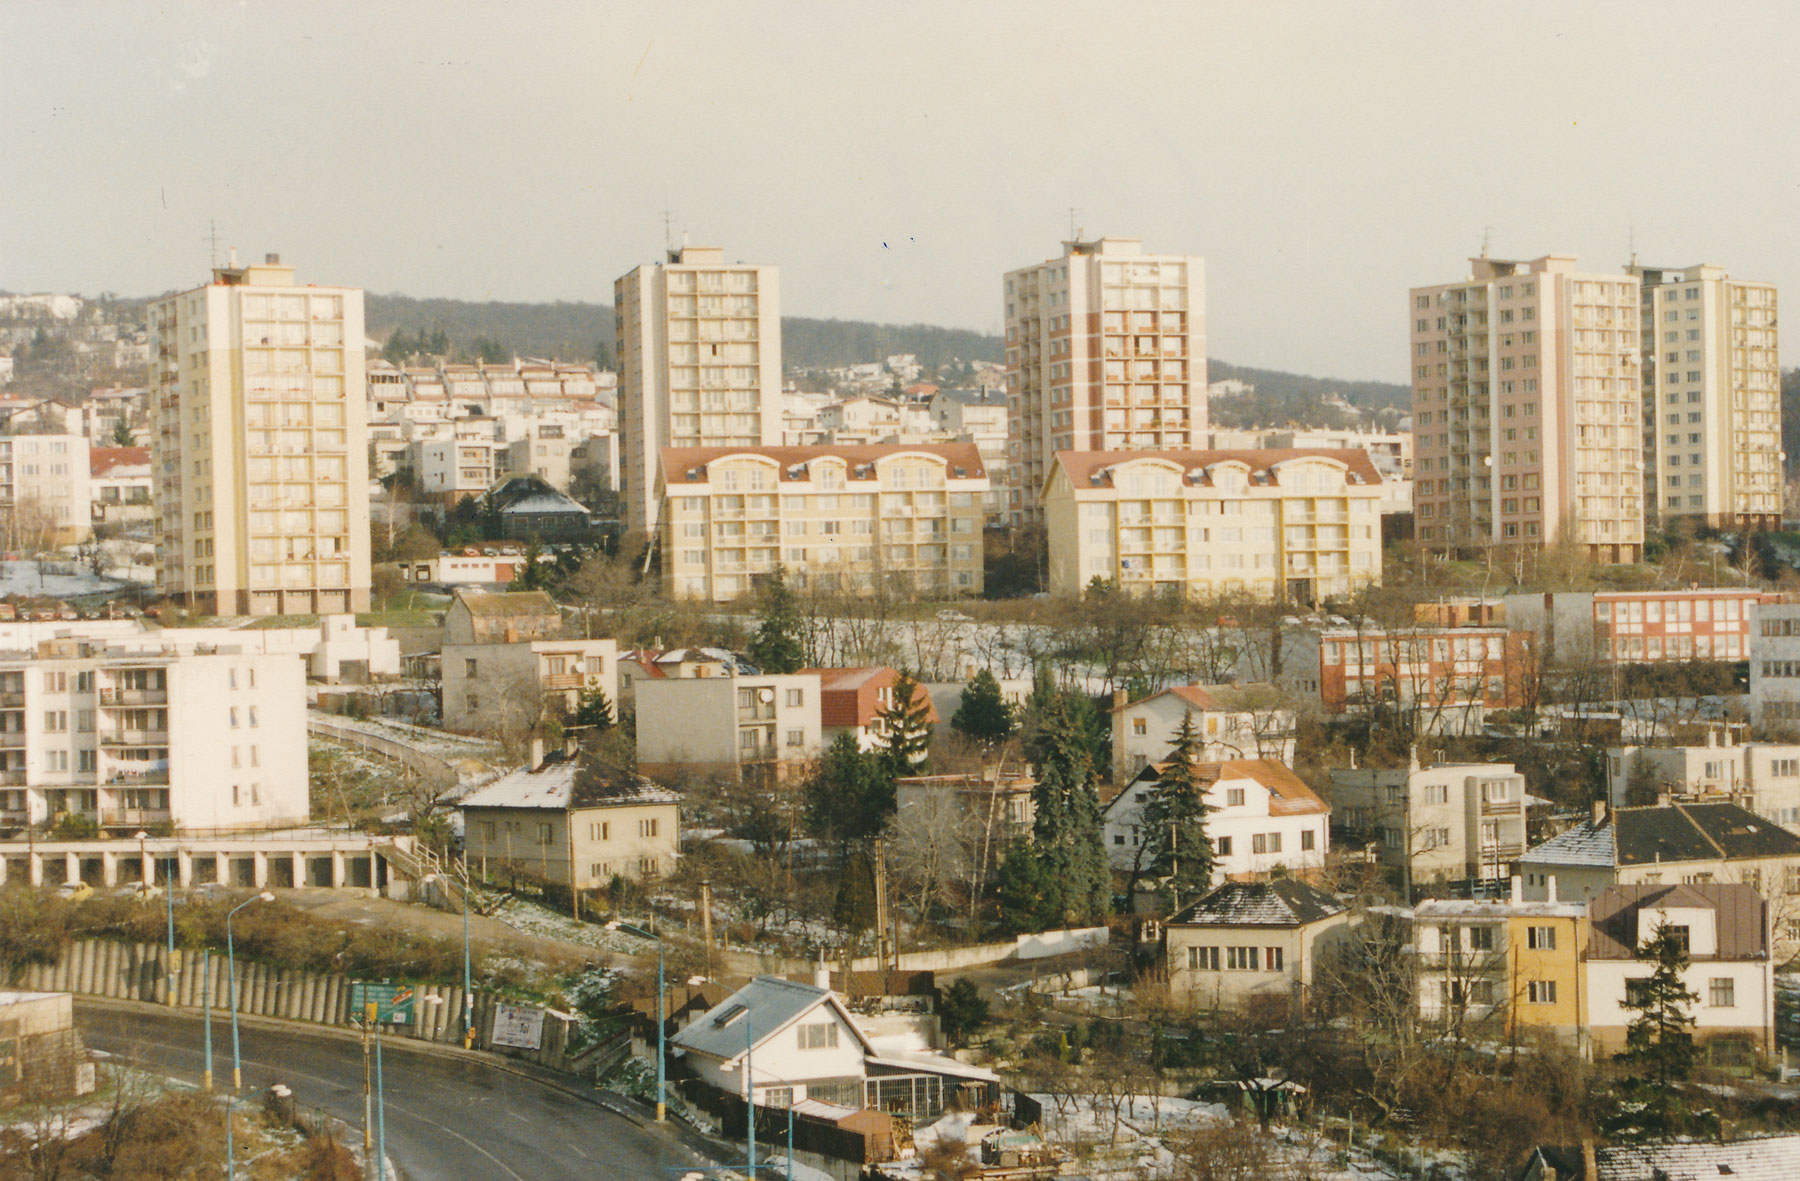 Po prvýkrát sa na území Slovenska použilo zateplenie celoplošne na obvodovom plášti budovy na pilotnom projekte 332 bytových jednotiek Bratislava-Kramáre (1991 – 1994).